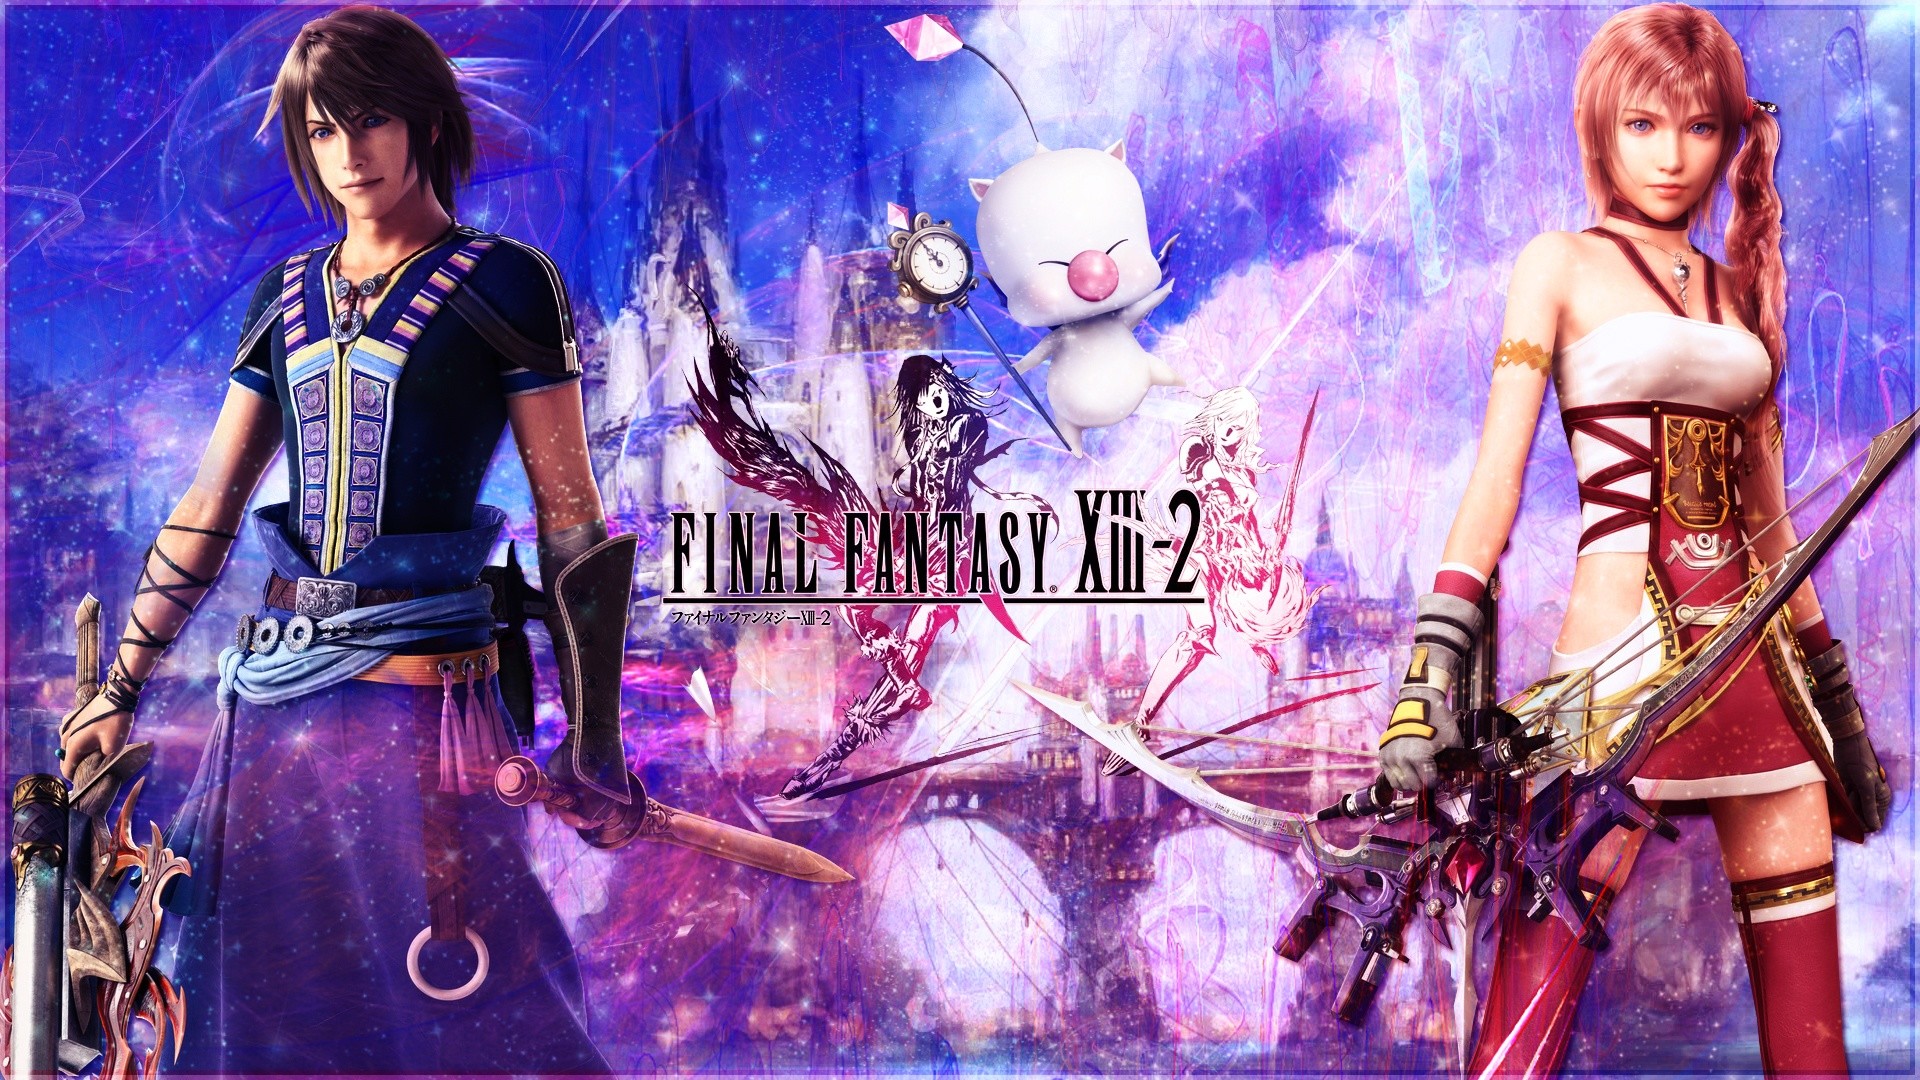 1920x1080 Final Fantasy XIII-2 wide wallpaper  Full HD